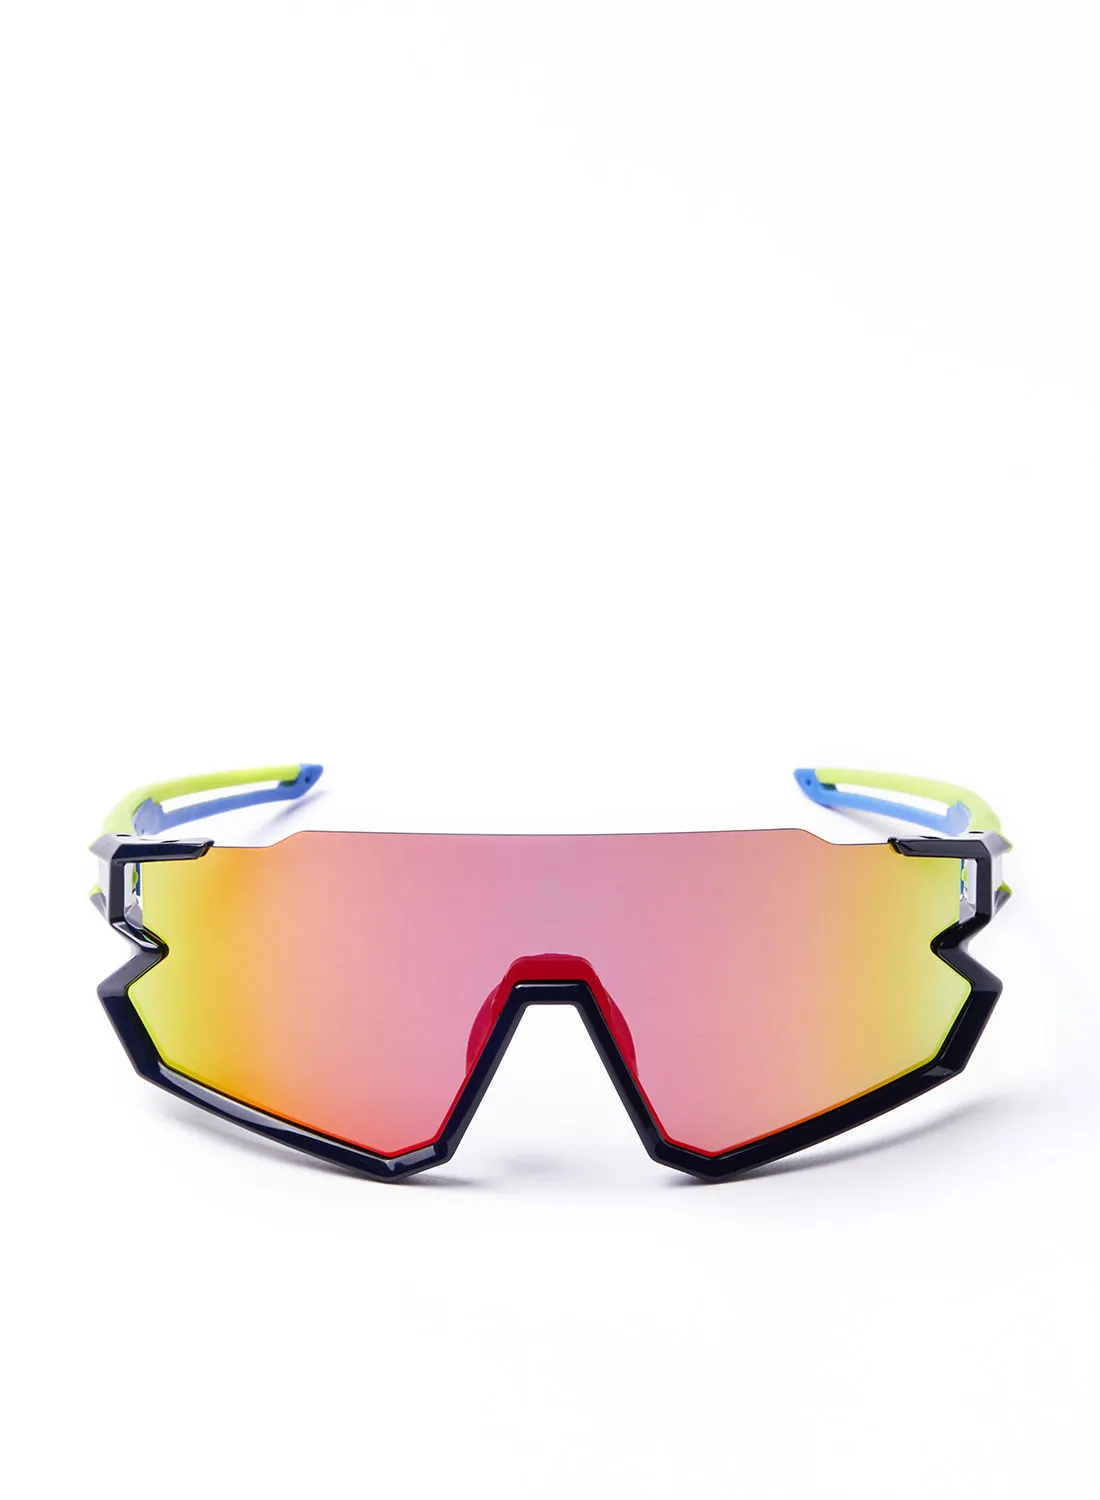 نظارة شمسية رياضية سكوتر للدراجات - Athletiq Club جبل جيس - إطار أزرق وأصفر مع عدسة متعددة الطبقات باللون الأحمر